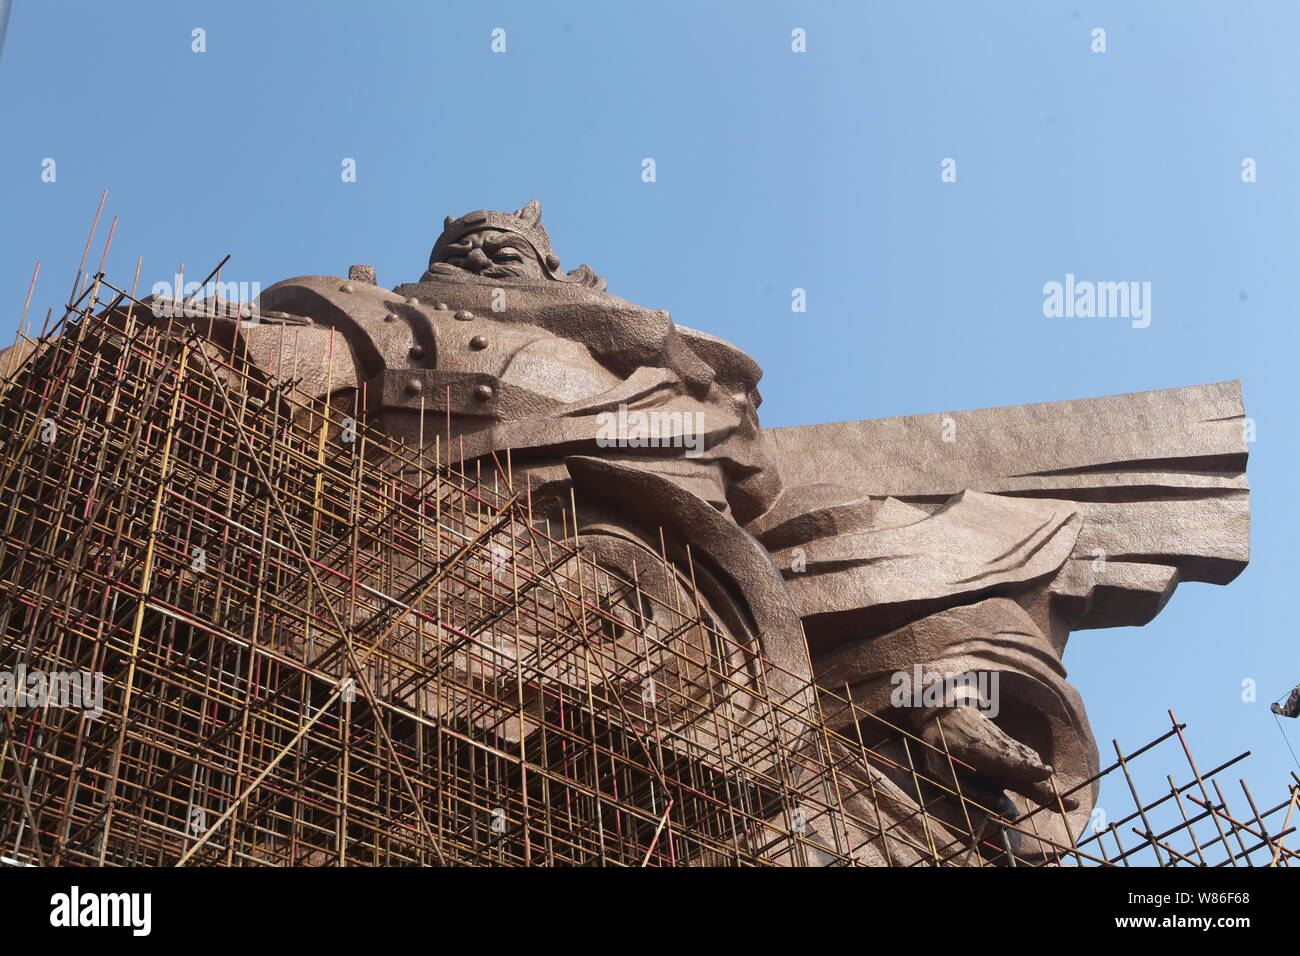 --FILE--La statue géante de l'ancien général chinois Guan Yu est en construction à l'Guan Gong dans le parc culturel de la ville de Jingzhou, Chine centrale's Hub Banque D'Images